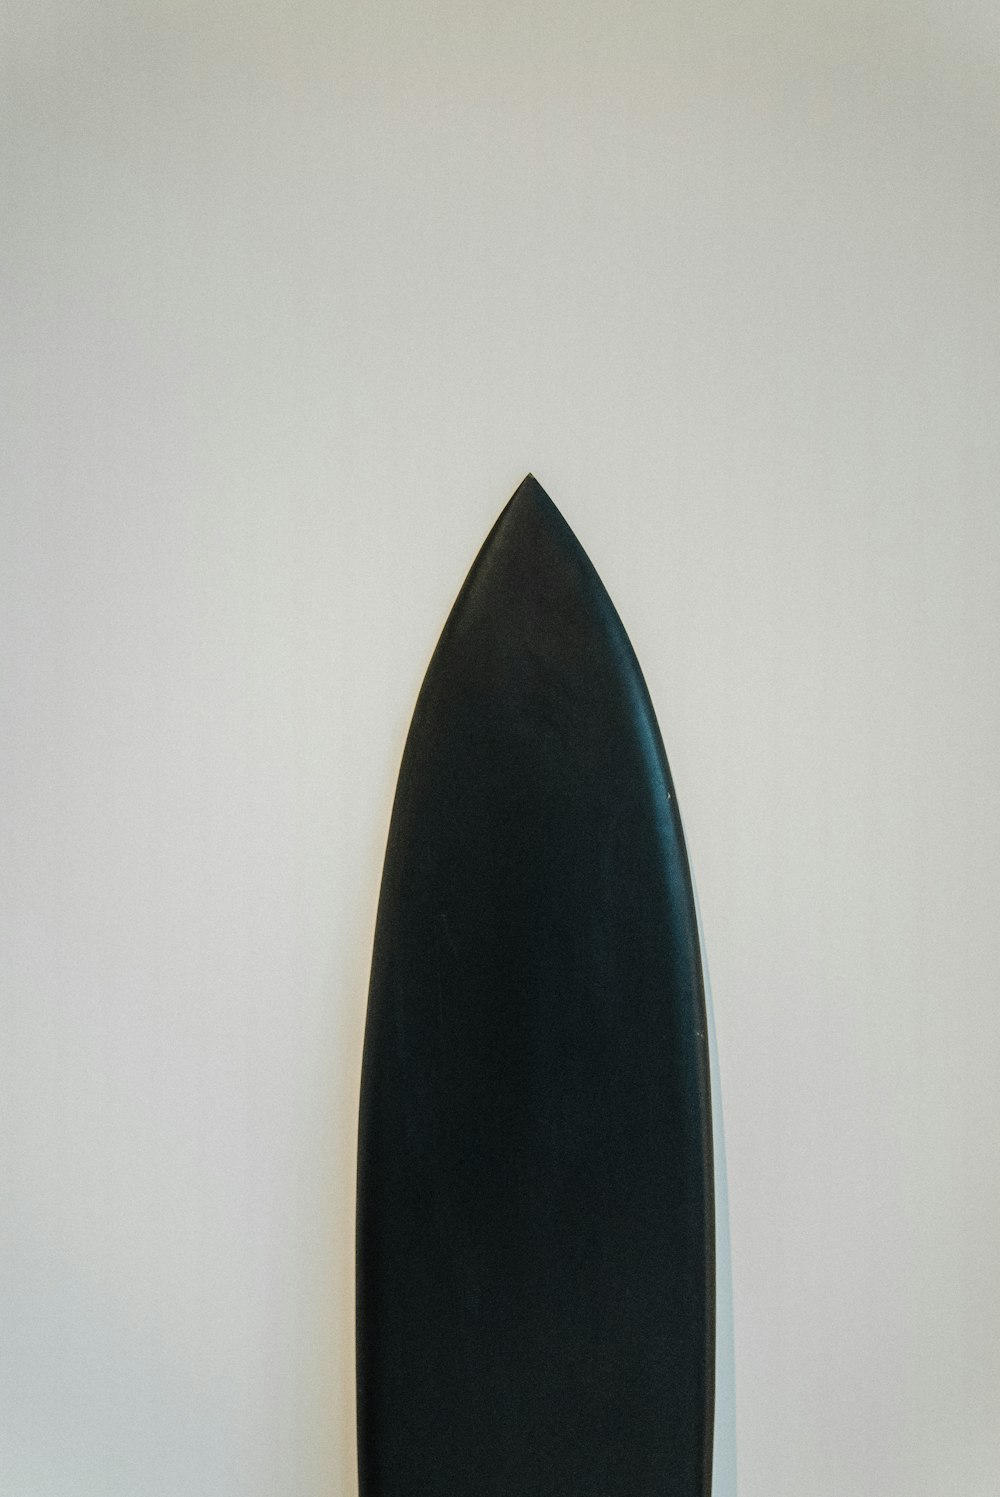 une planche de surf noire appuyée contre un mur blanc